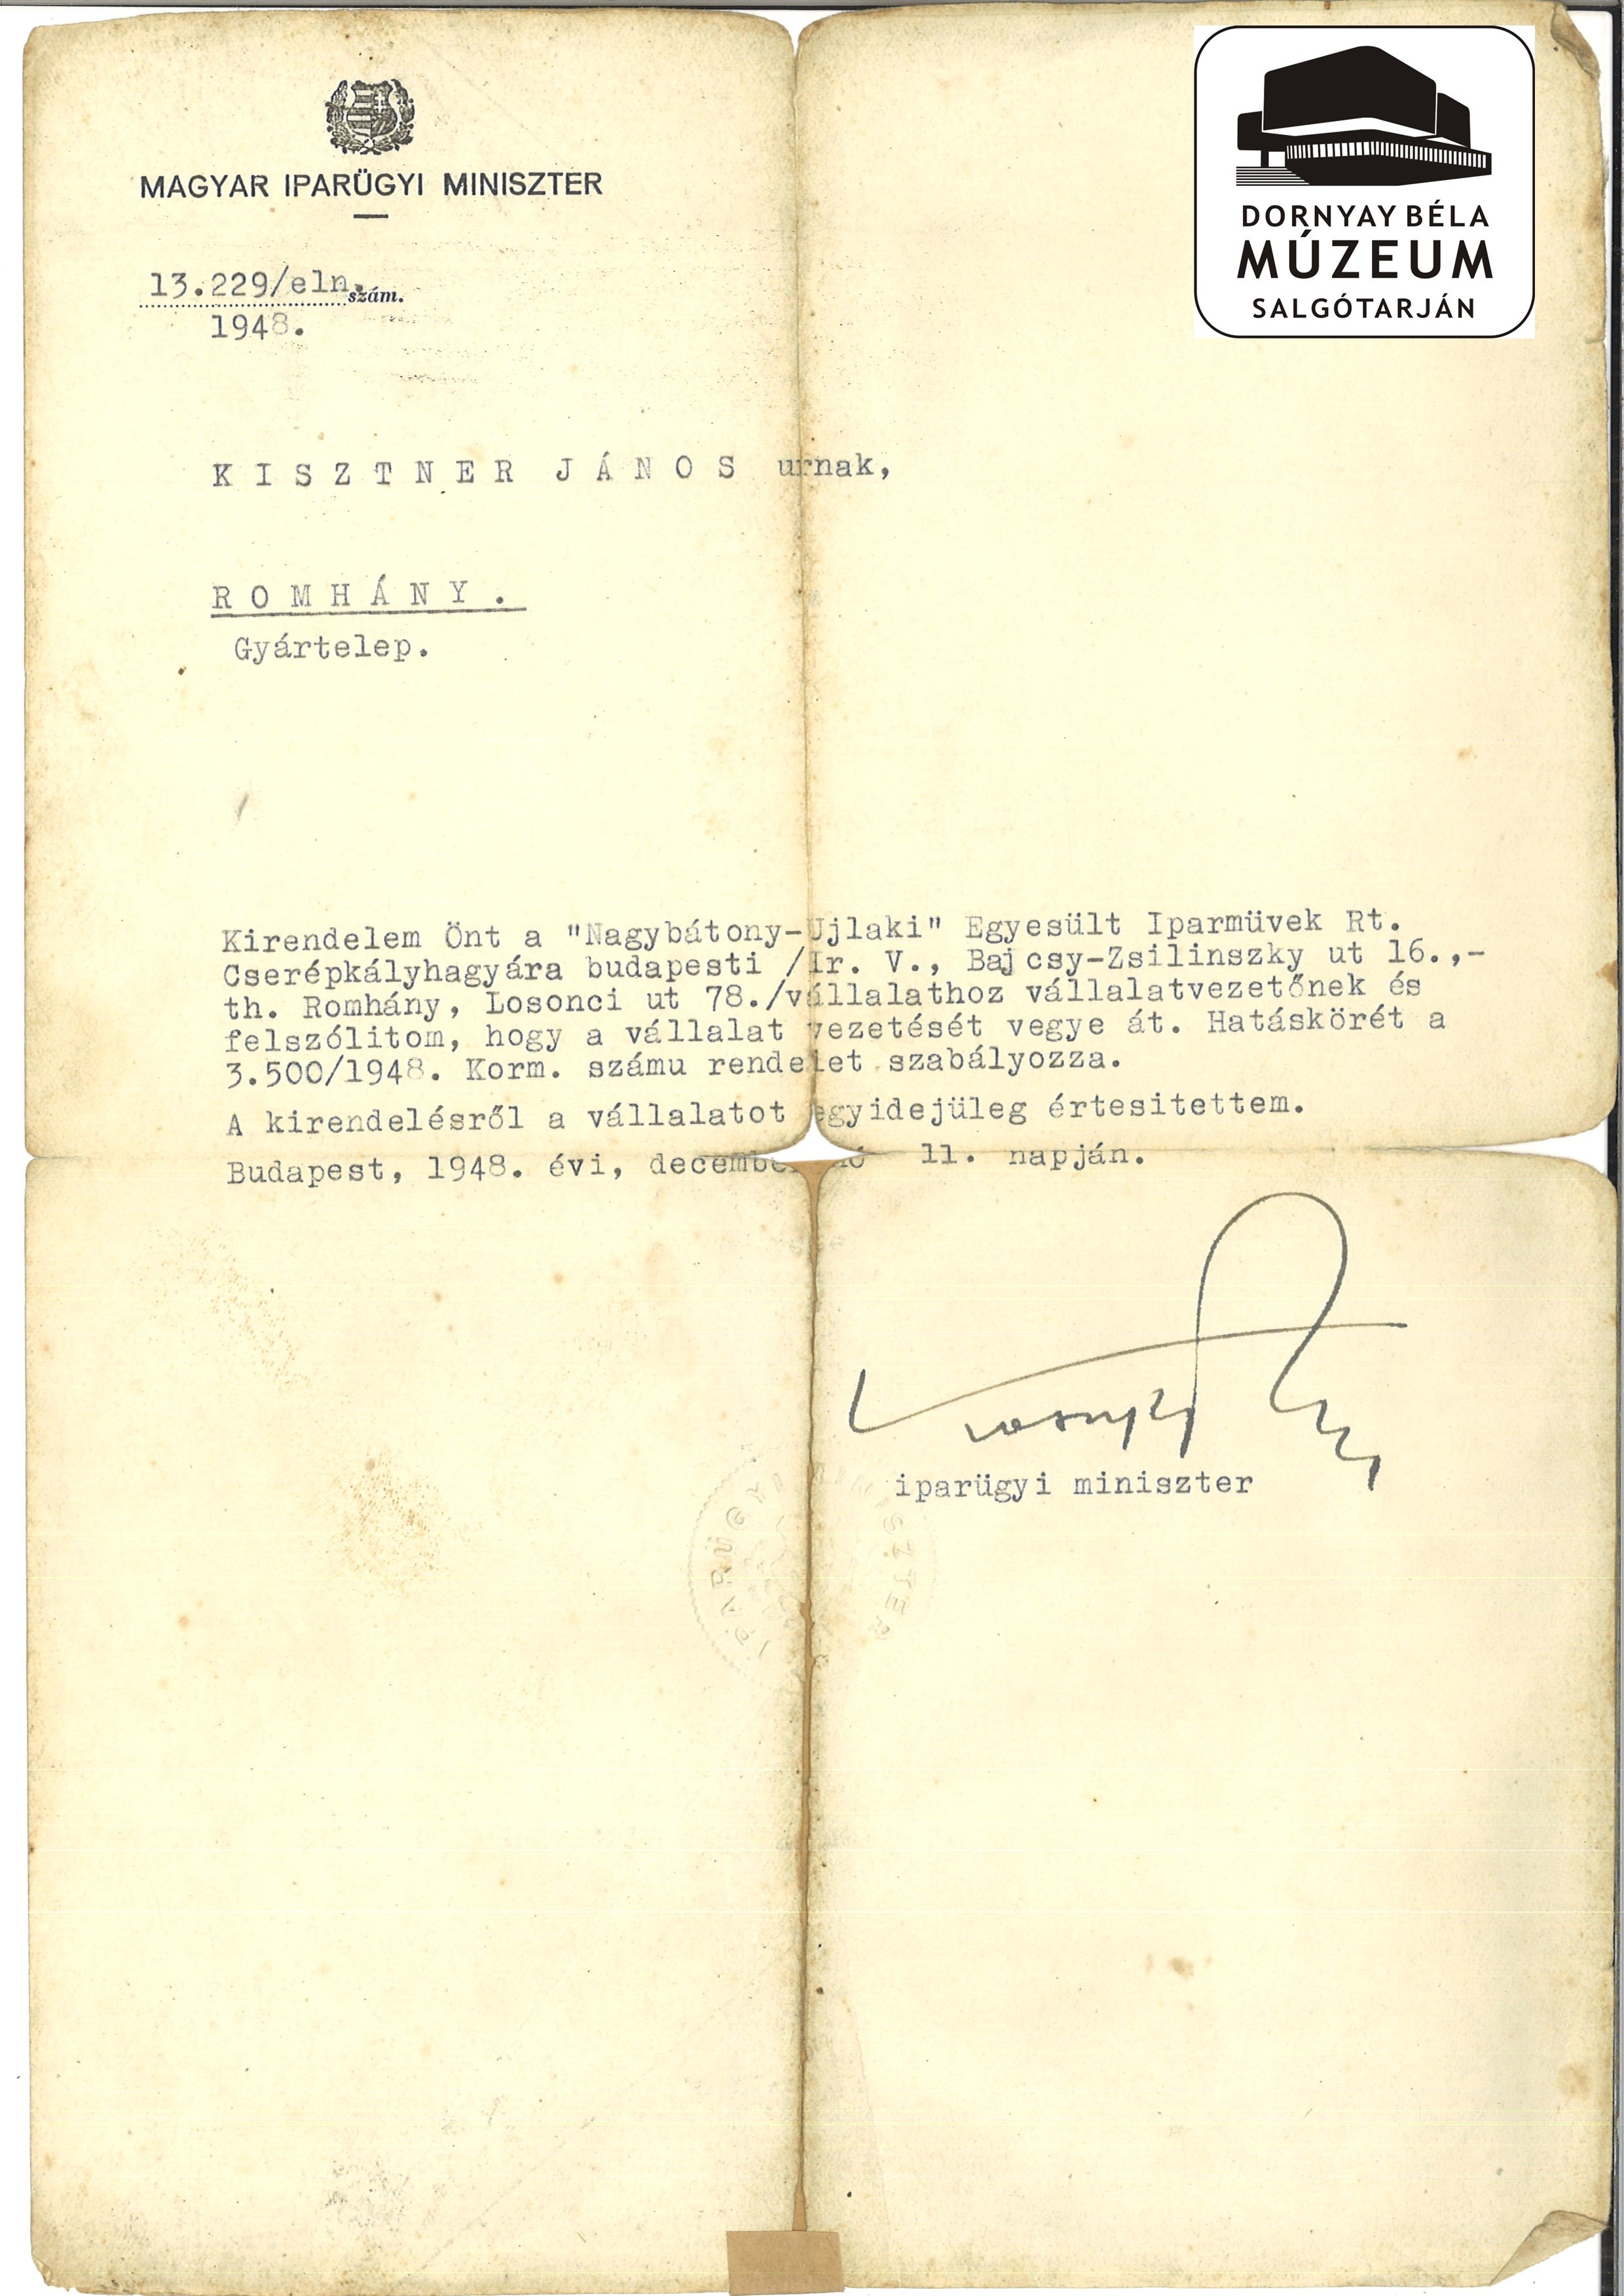 Kisztner János vállalatvezetői kinevezése Romhányi Cserépkályhagyár (Dornyay Béla Múzeum, Salgótarján CC BY-NC-SA)